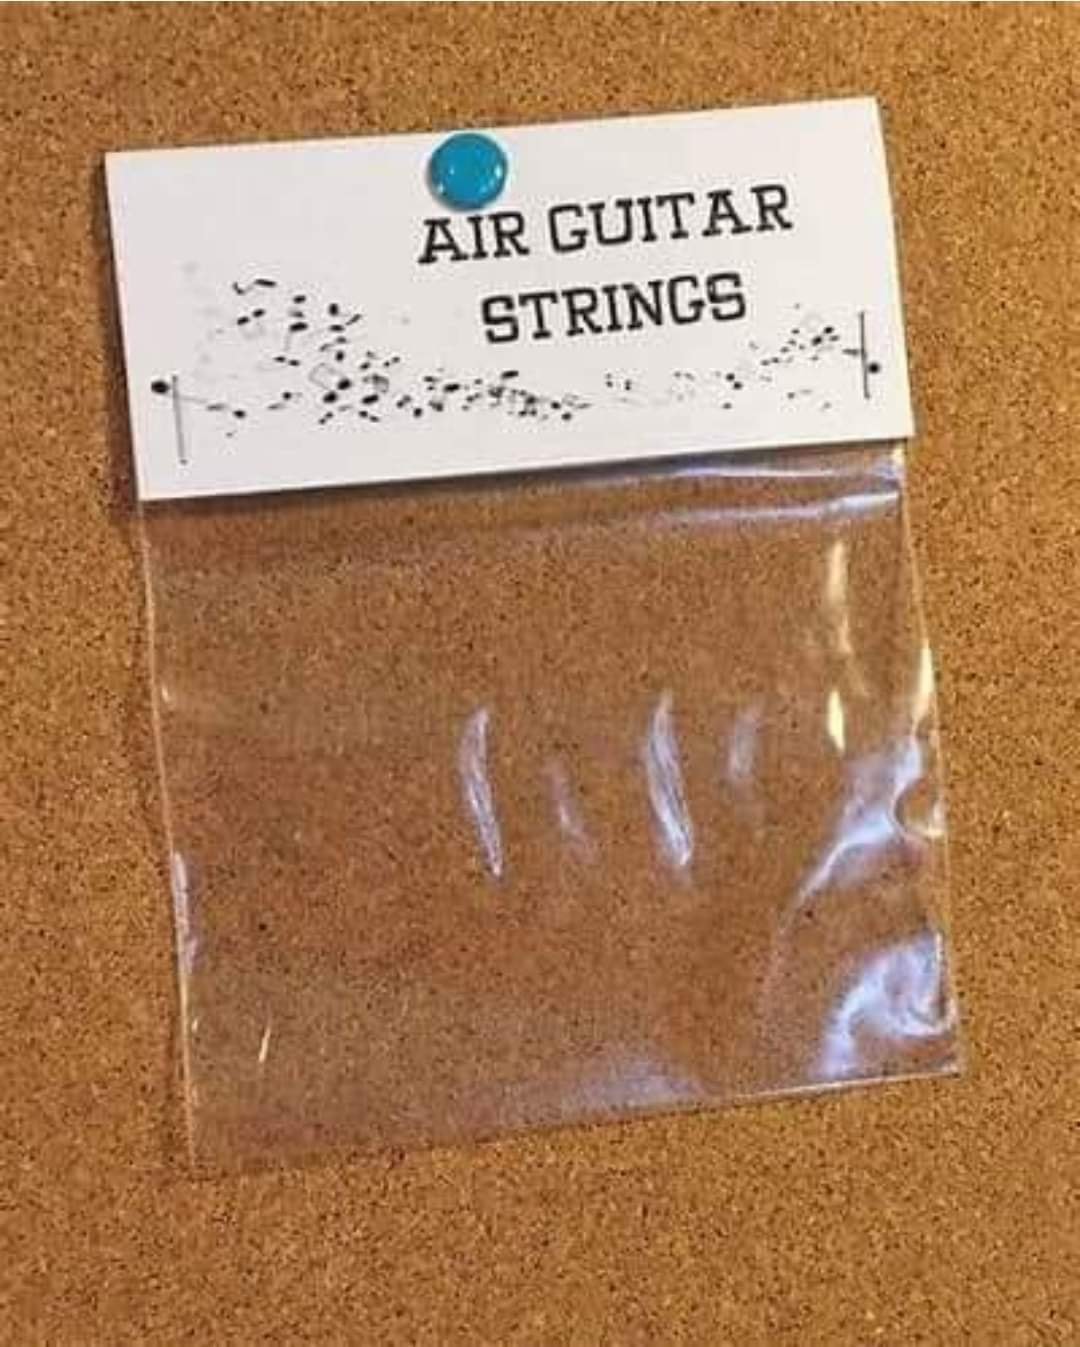 air guitar strings.jpg